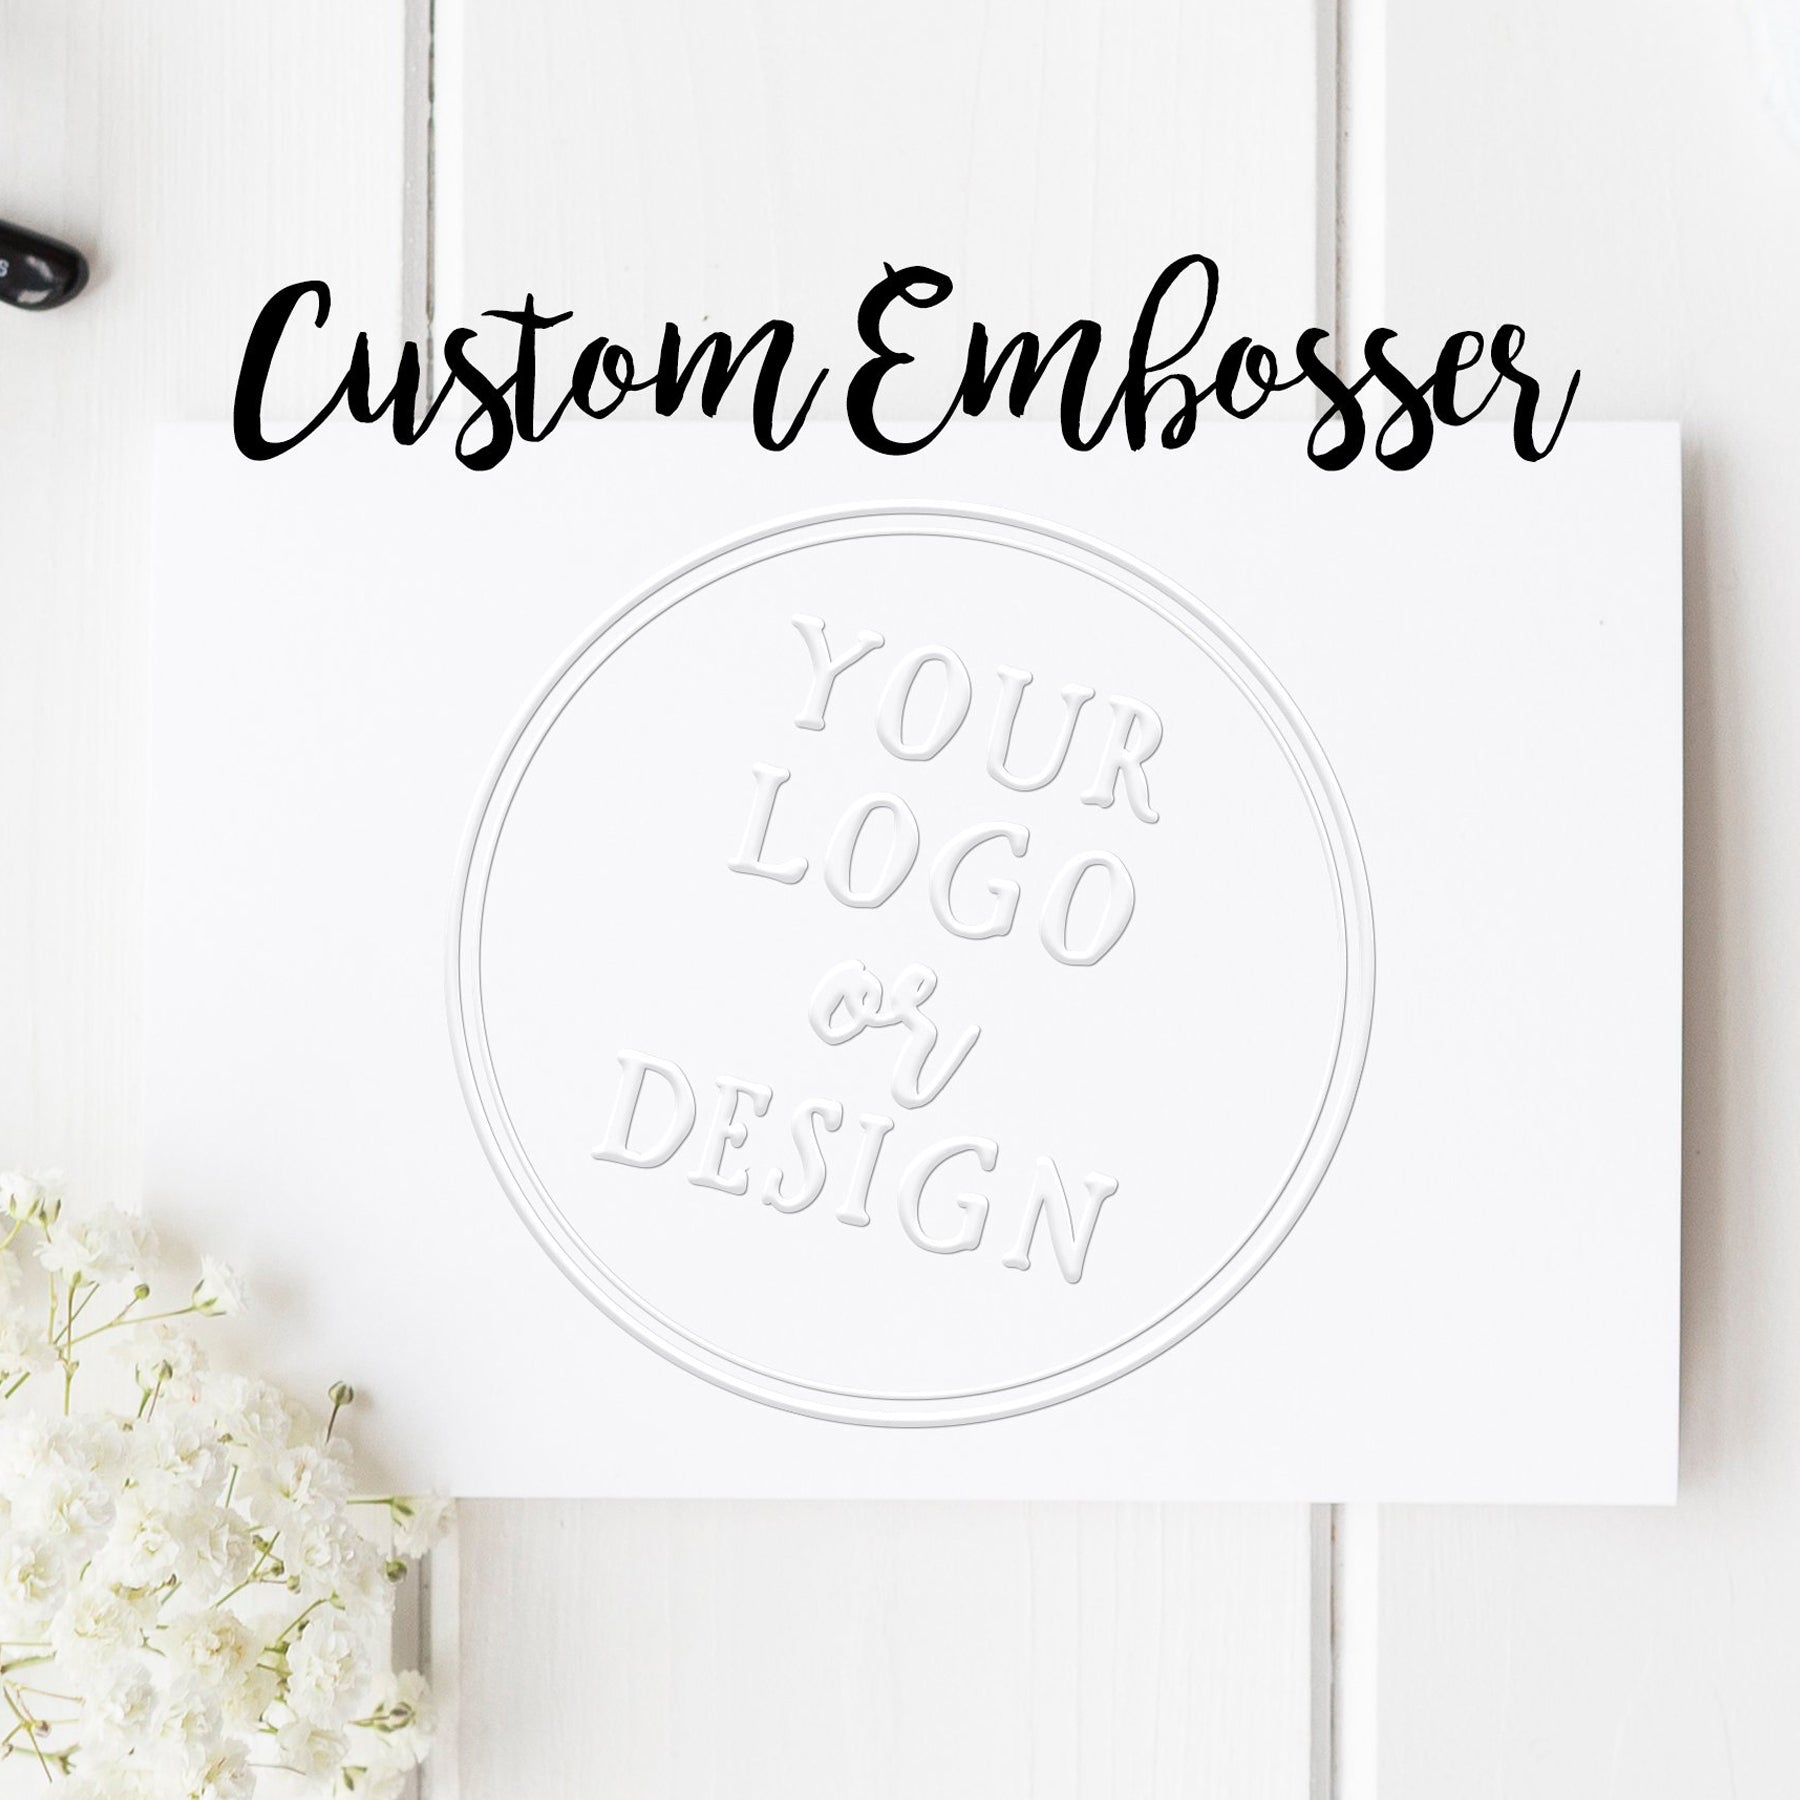 Custom Embosser from your Design